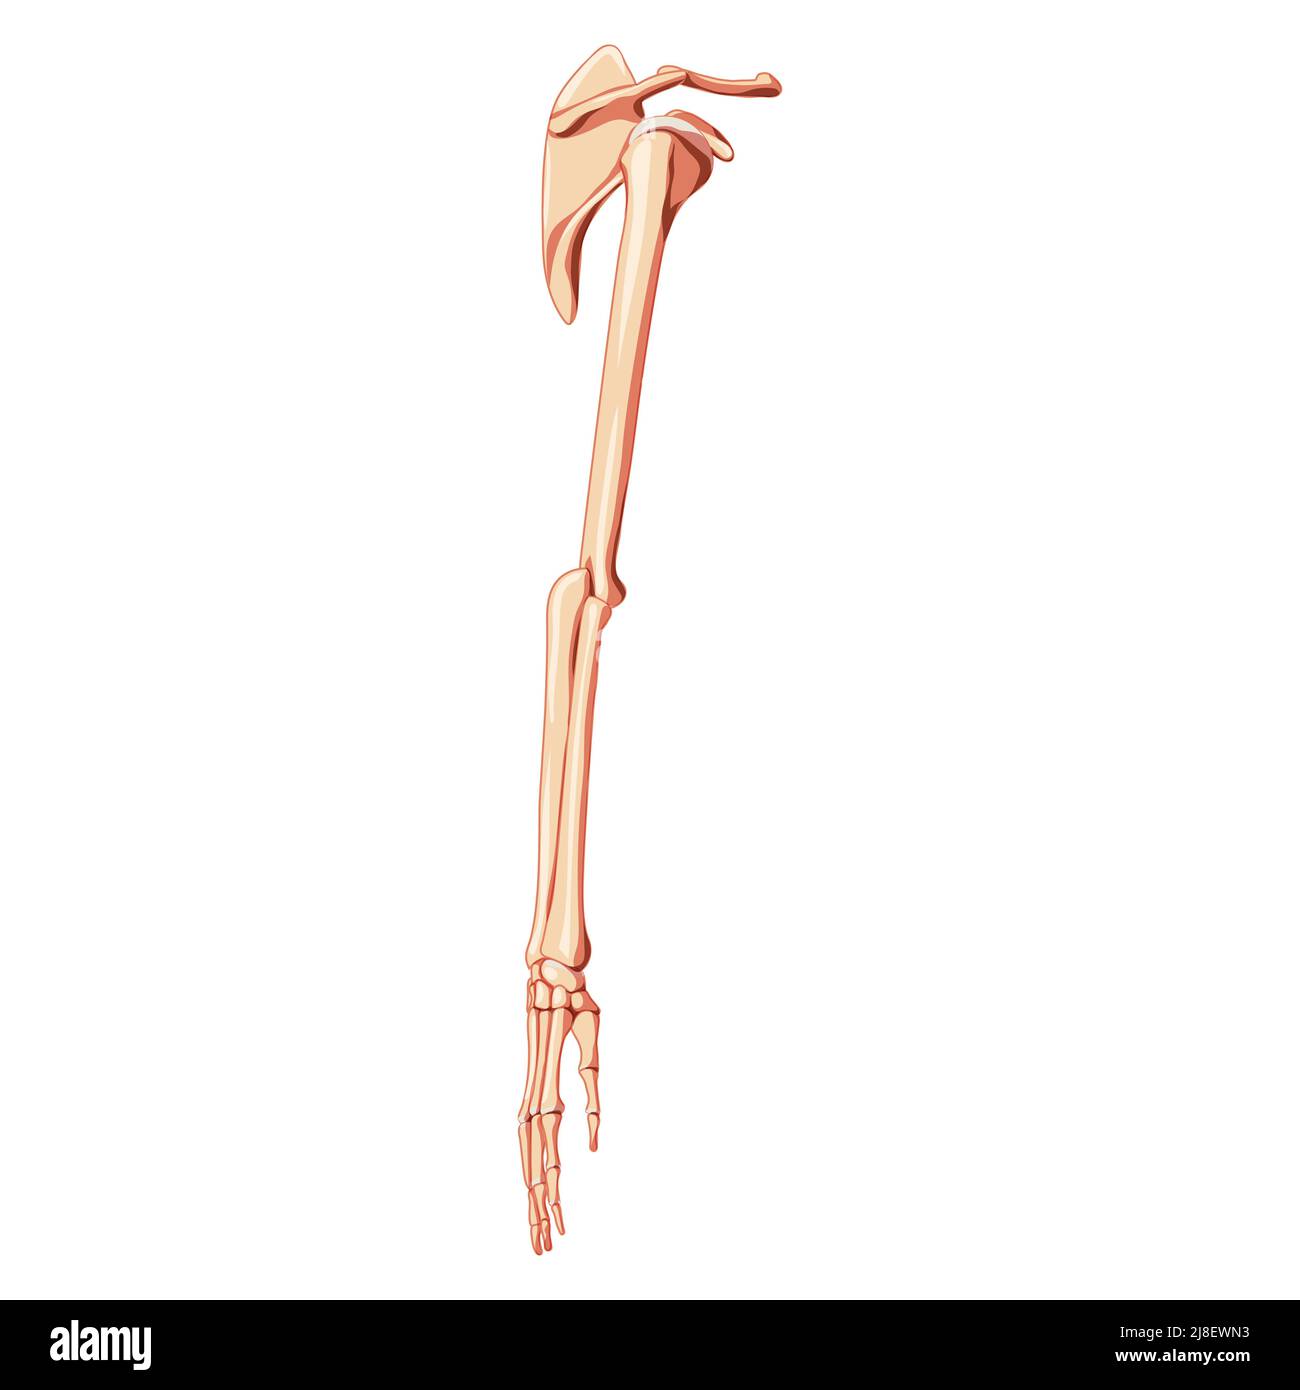 Braccio dell'arto superiore con cintura a spalla scheletro mani clavicola, scapola vista laterale lato umano. Immagine vettoriale piatta e realistica, con correzione anatomica e colore naturale, isolata su sfondo bianco Illustrazione Vettoriale